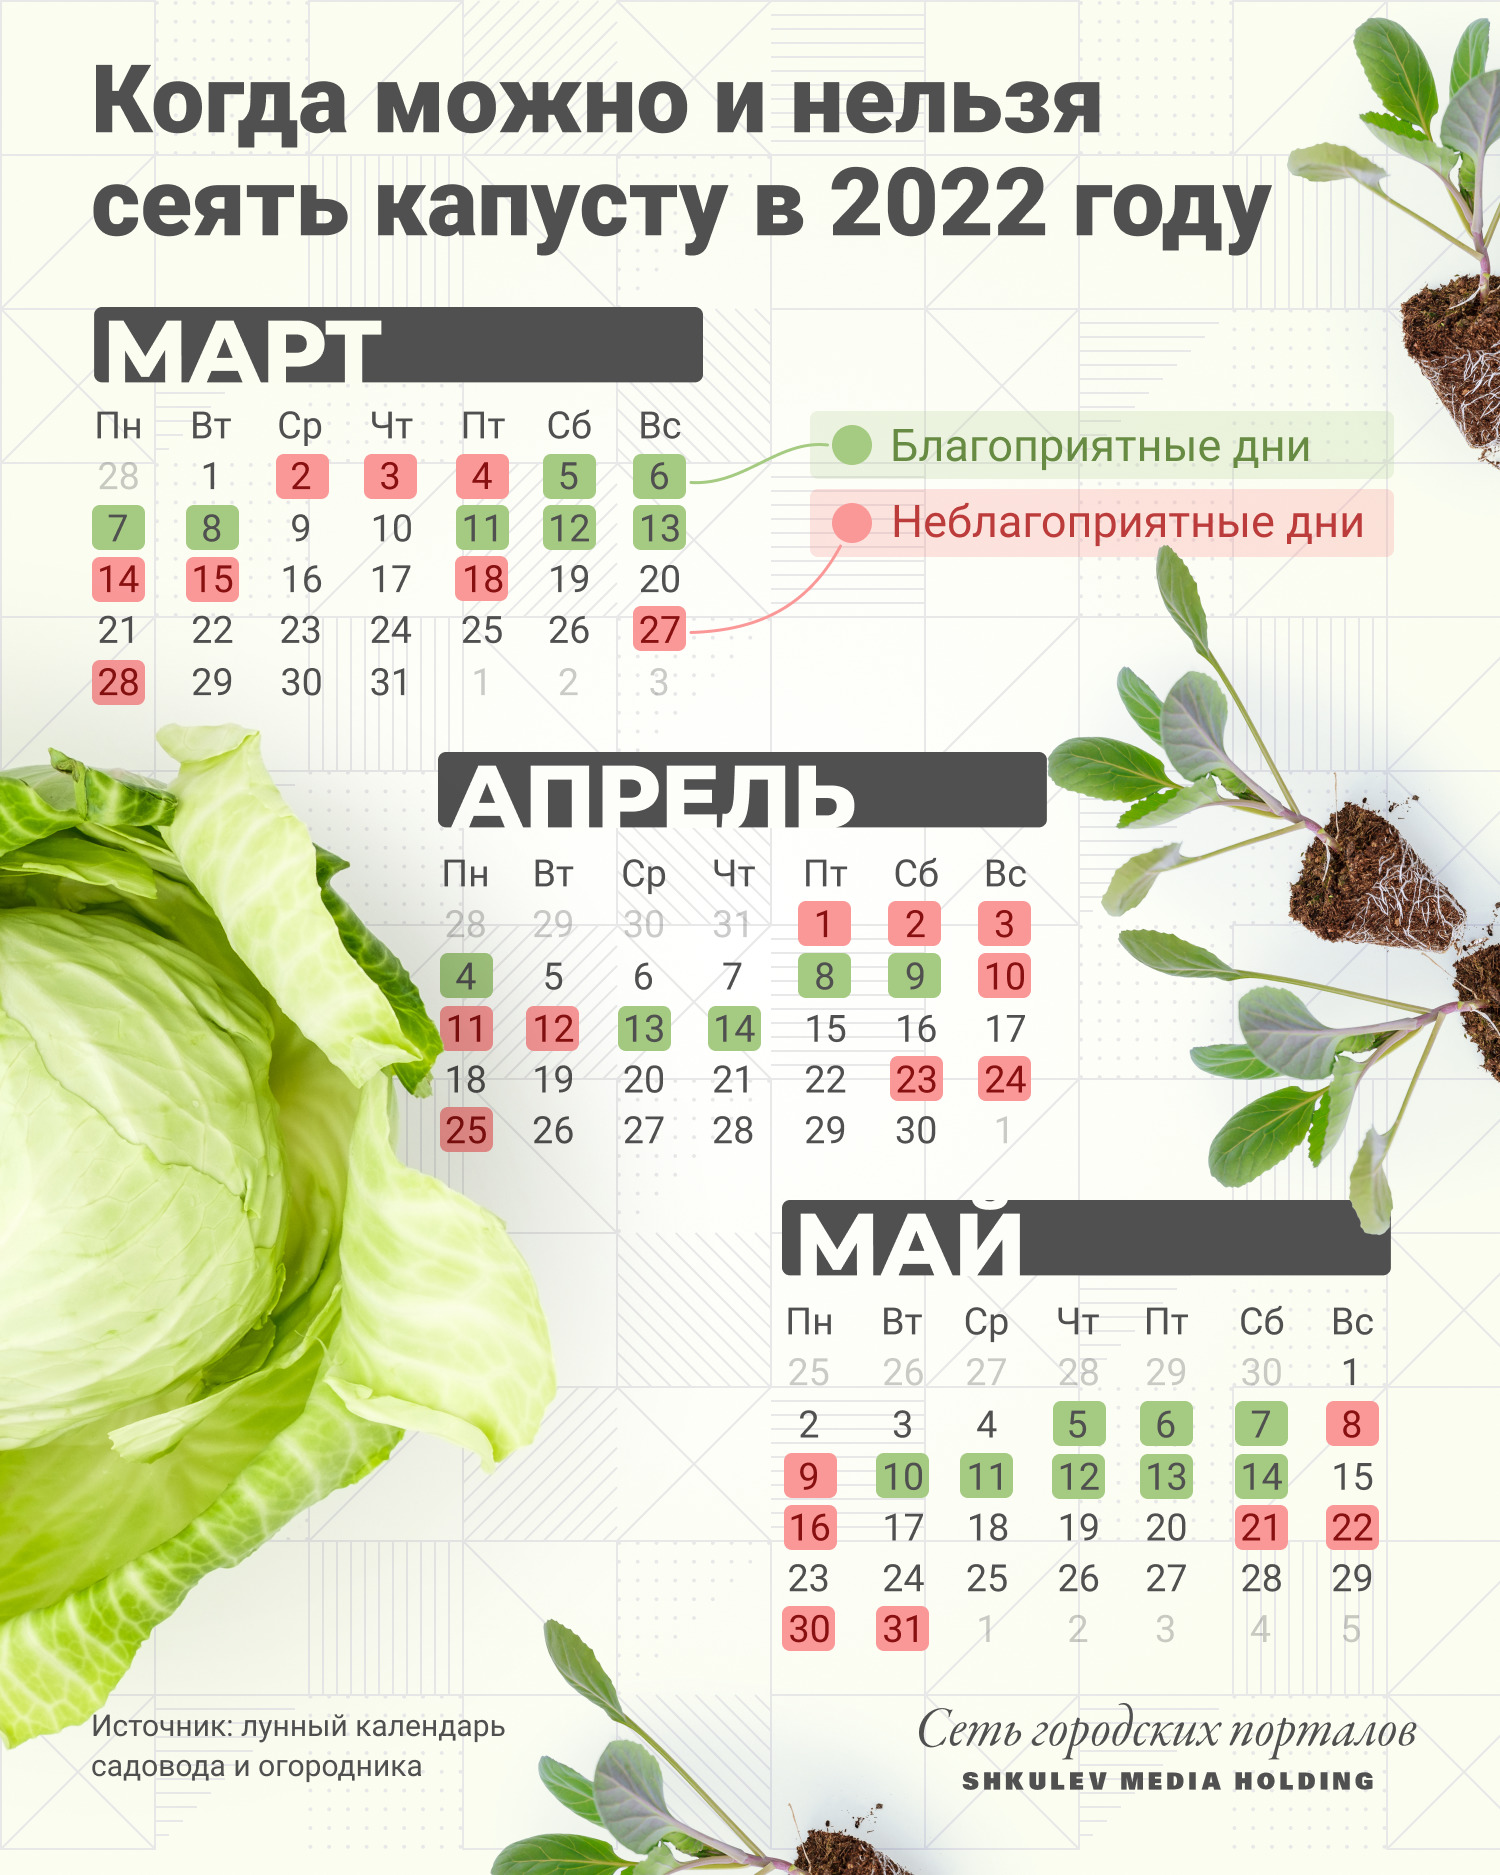 Благоприятные и неблагоприятные дни для посева капусты в 2022 году